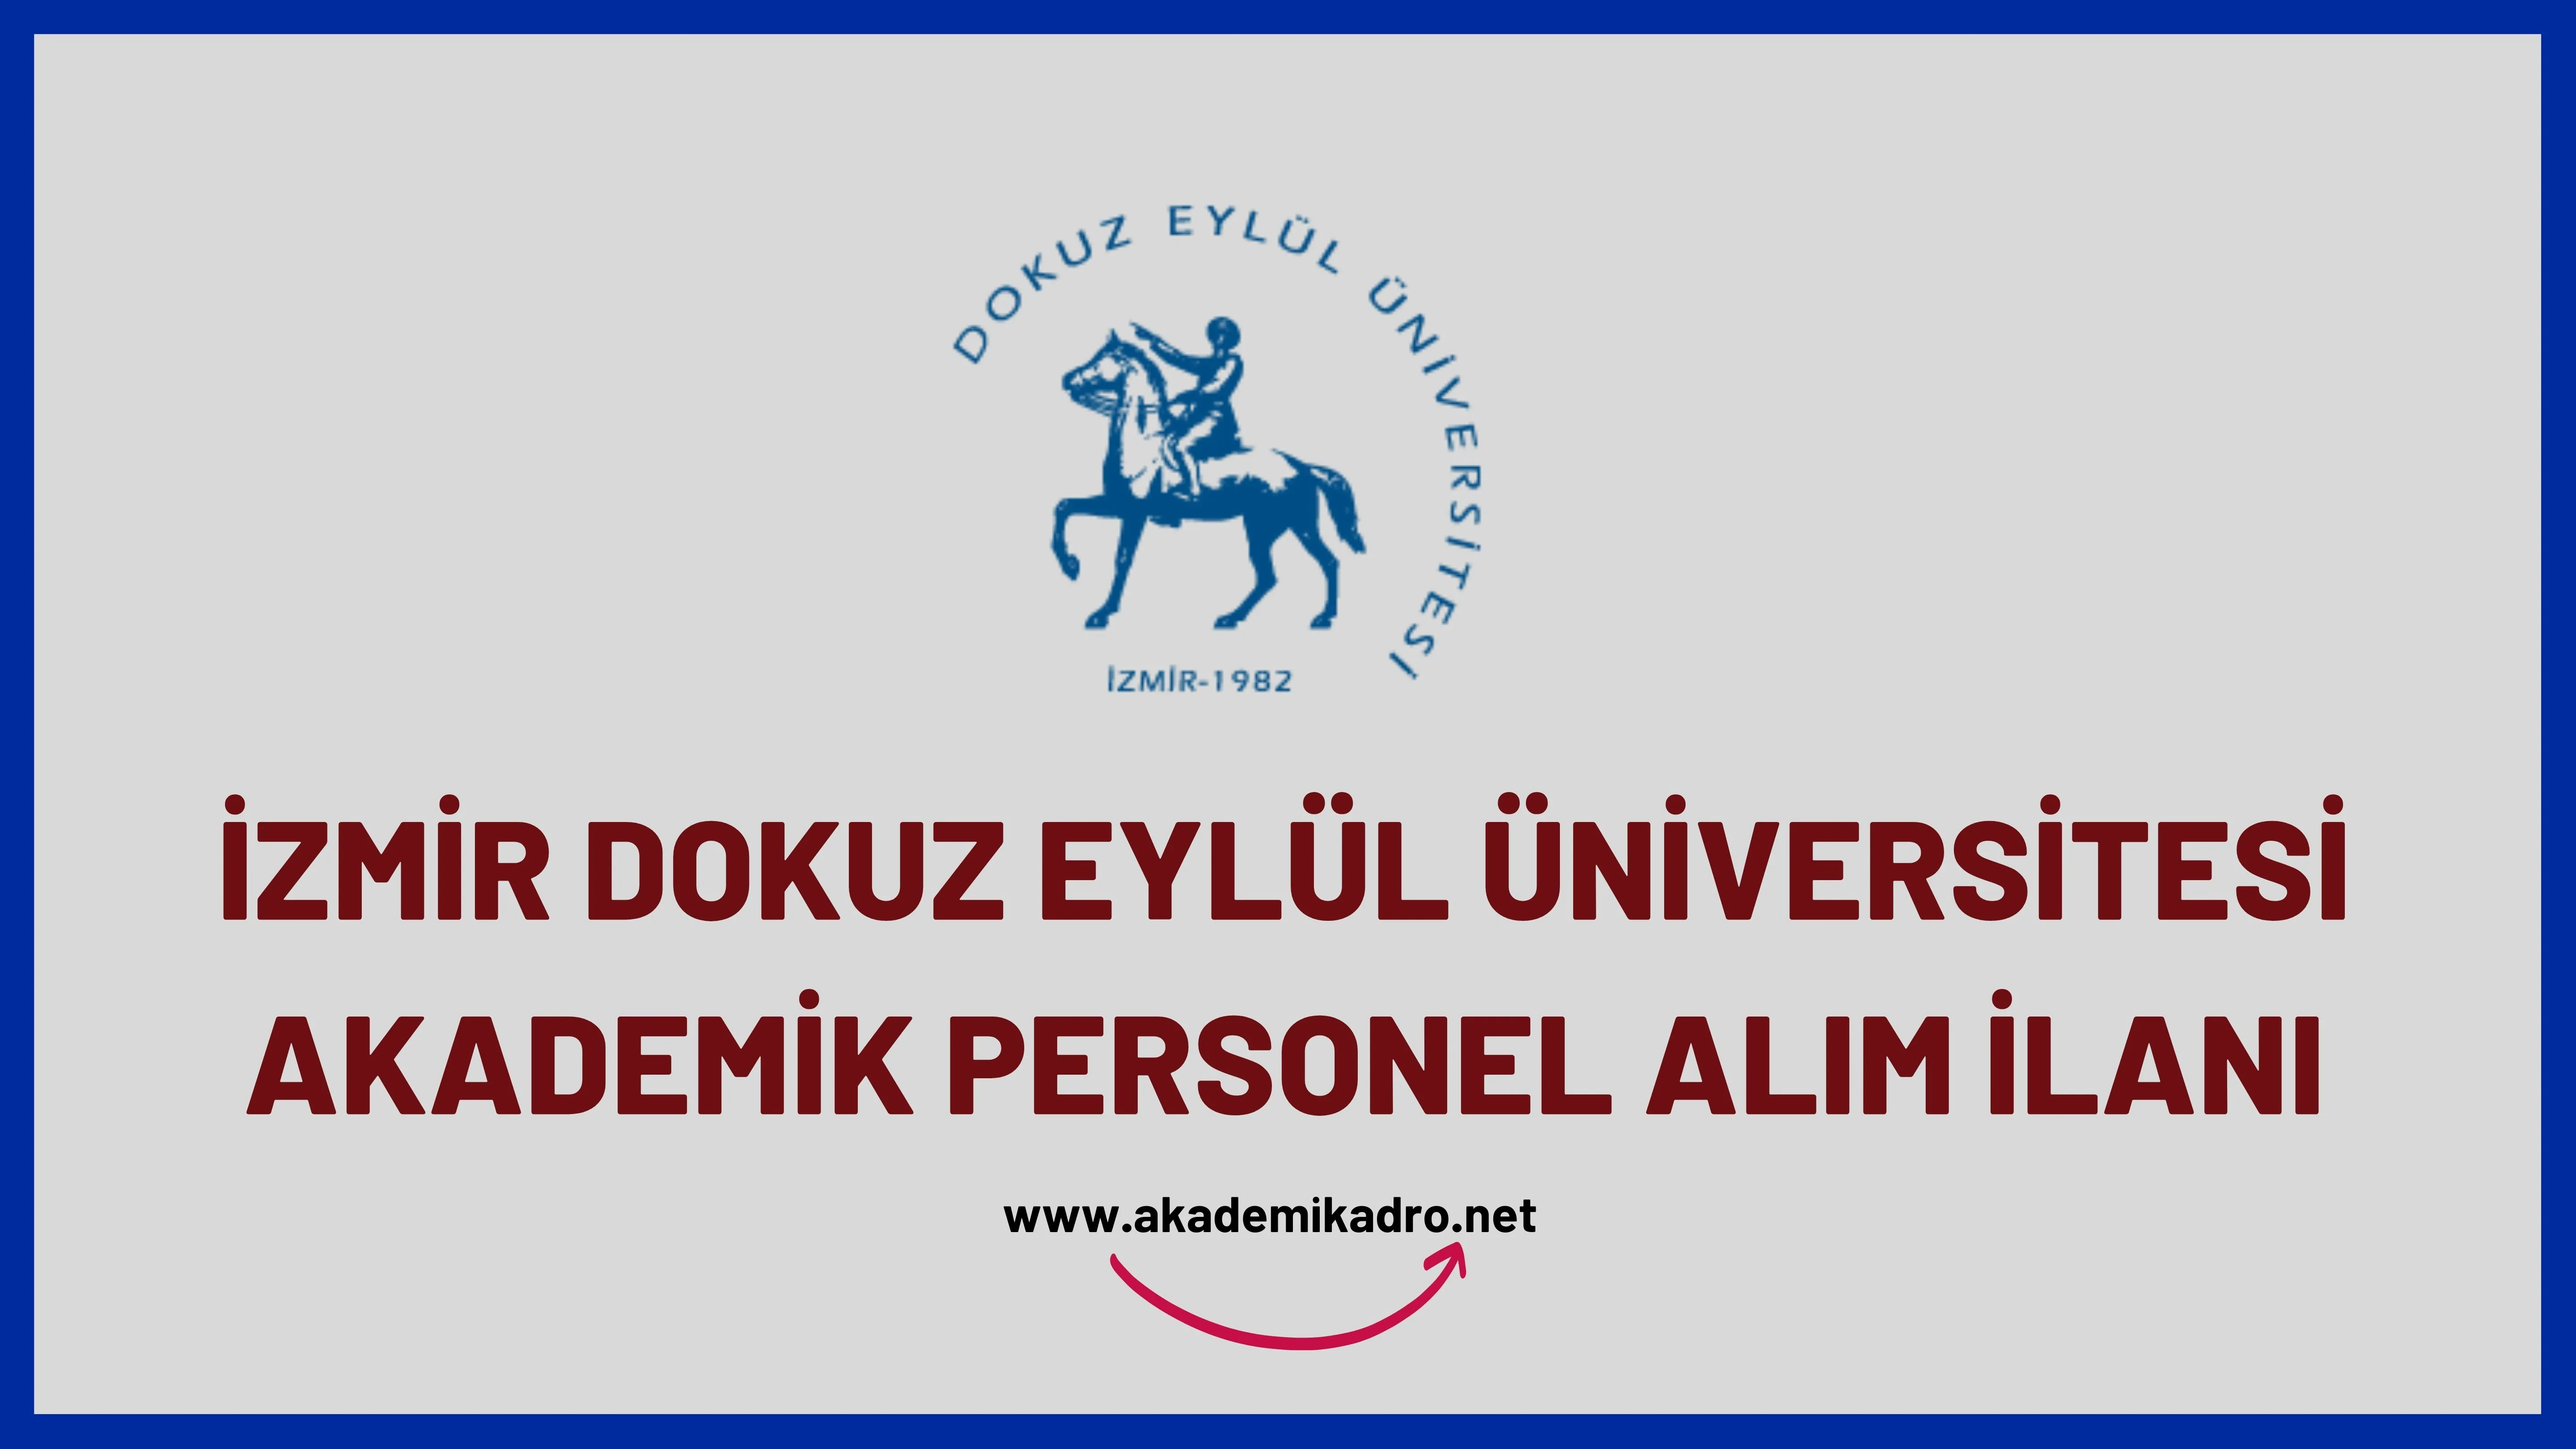 Dokuz Eylül Üniversitesi birçok alandan 31 akademik personel alacak.